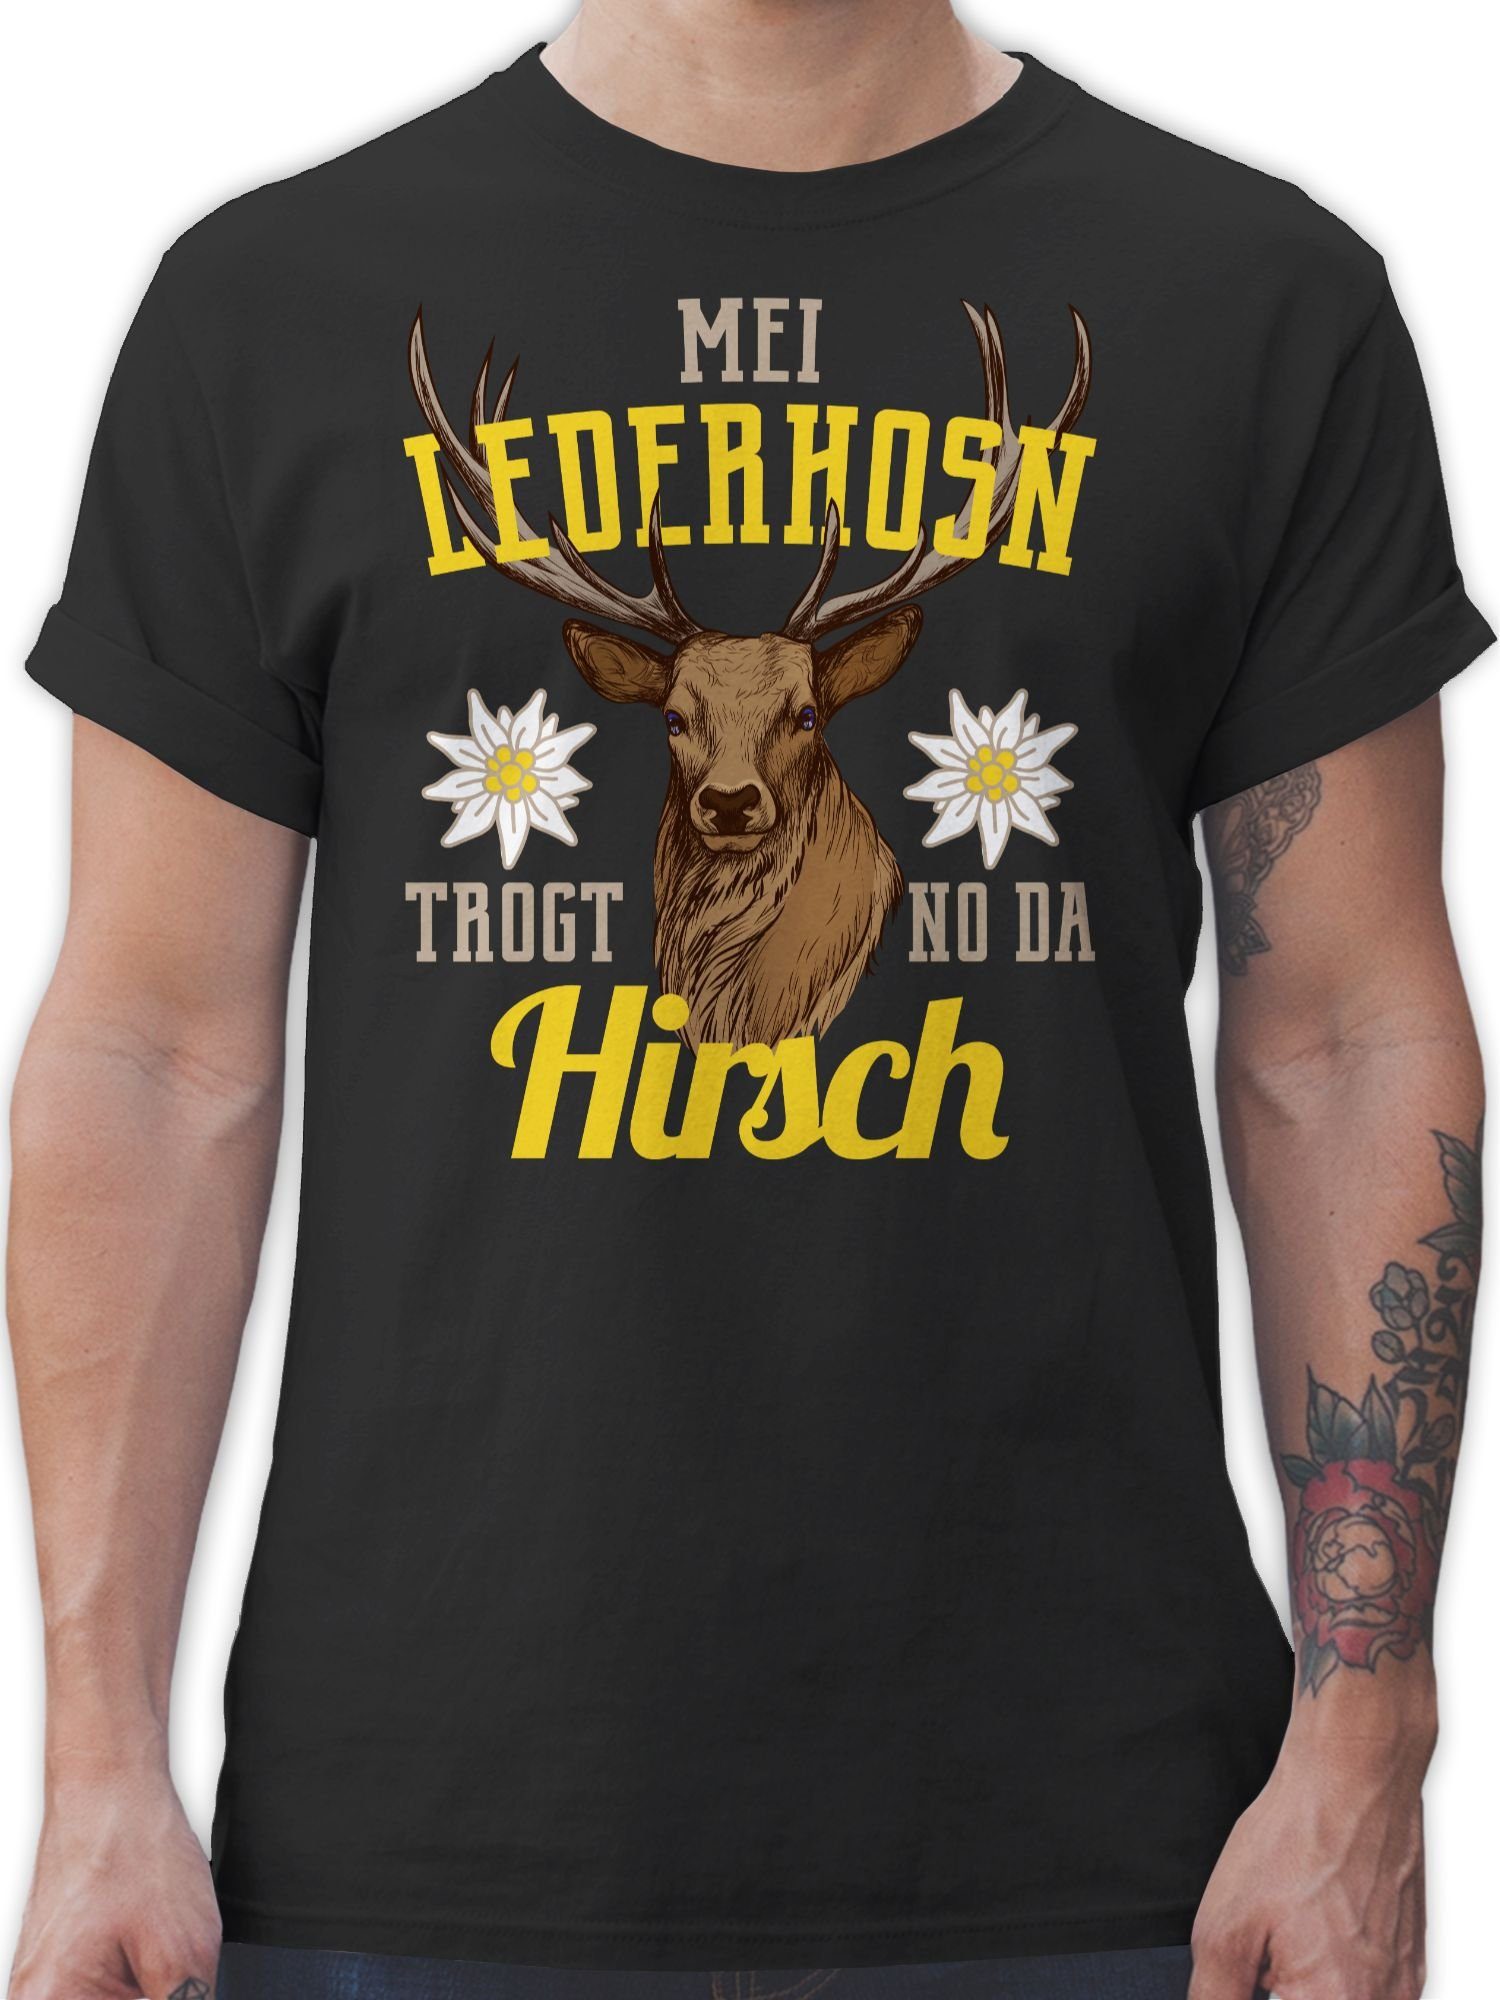 Shirtracer T-Shirt Mei Lederhosn trogt no da Hirsch - gelb/braun Mode für Oktoberfest Herren 1 Schwarz